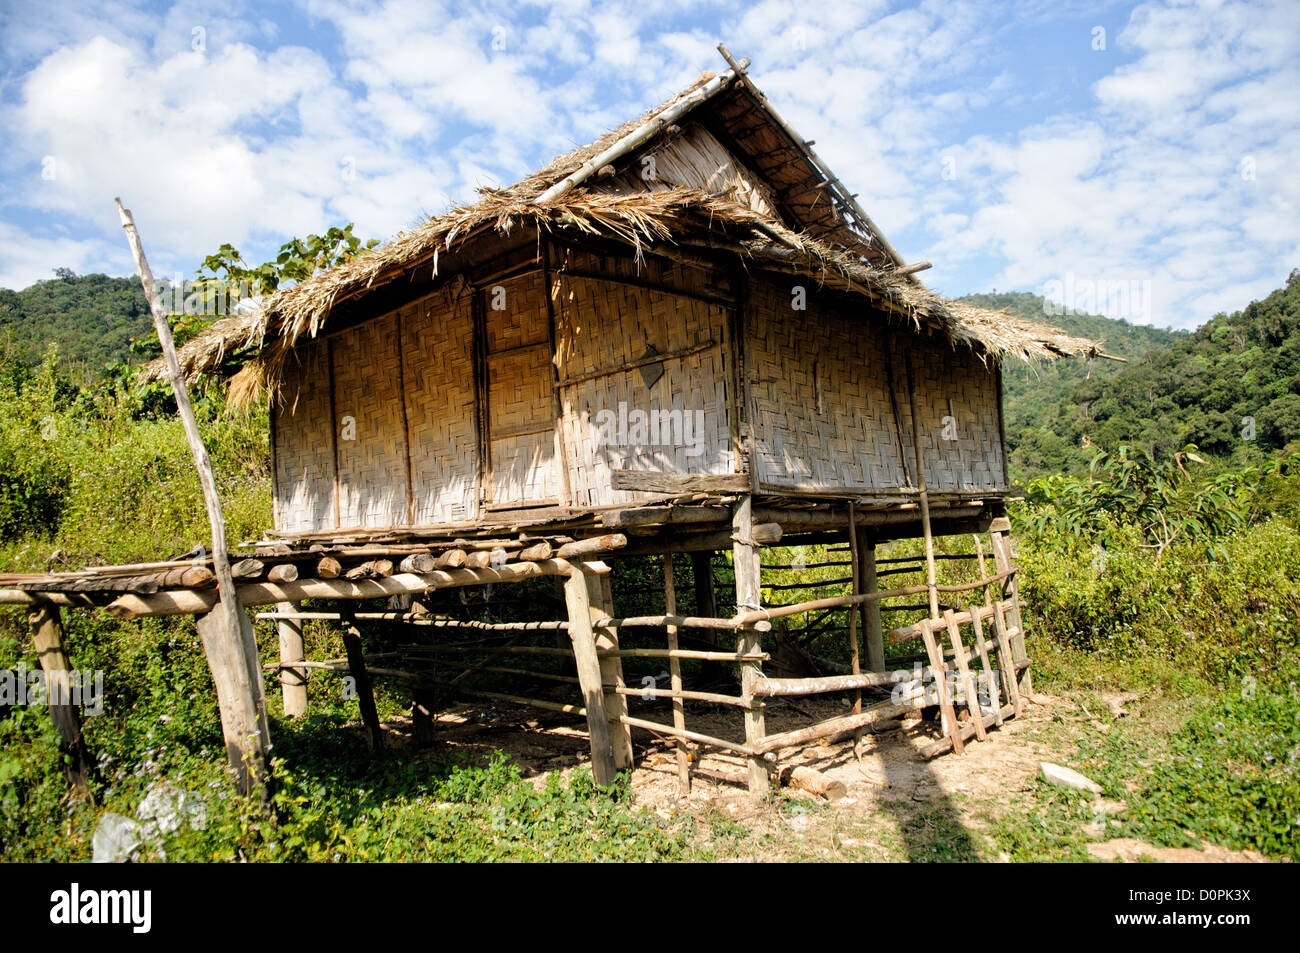 LUANG NAMTHA, Laos - una cabaña de arroz construido en gran parte con tejido de bambú en la provincia de Luang Namtha en el norte de Laos. Foto de stock